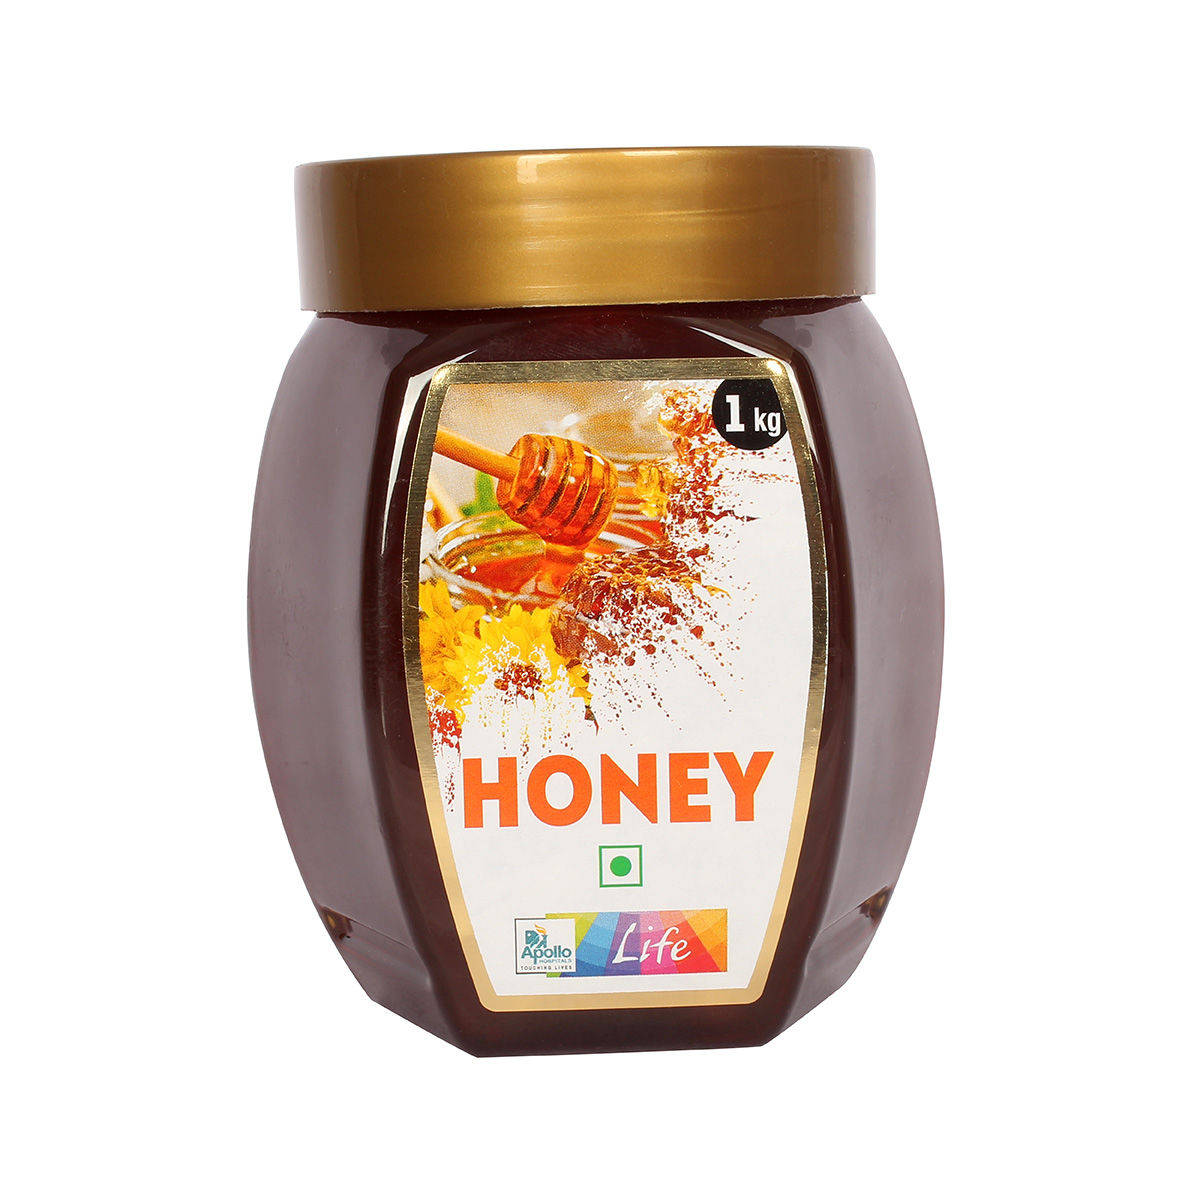 Buy Apollo Life Honey, 1 kg Online